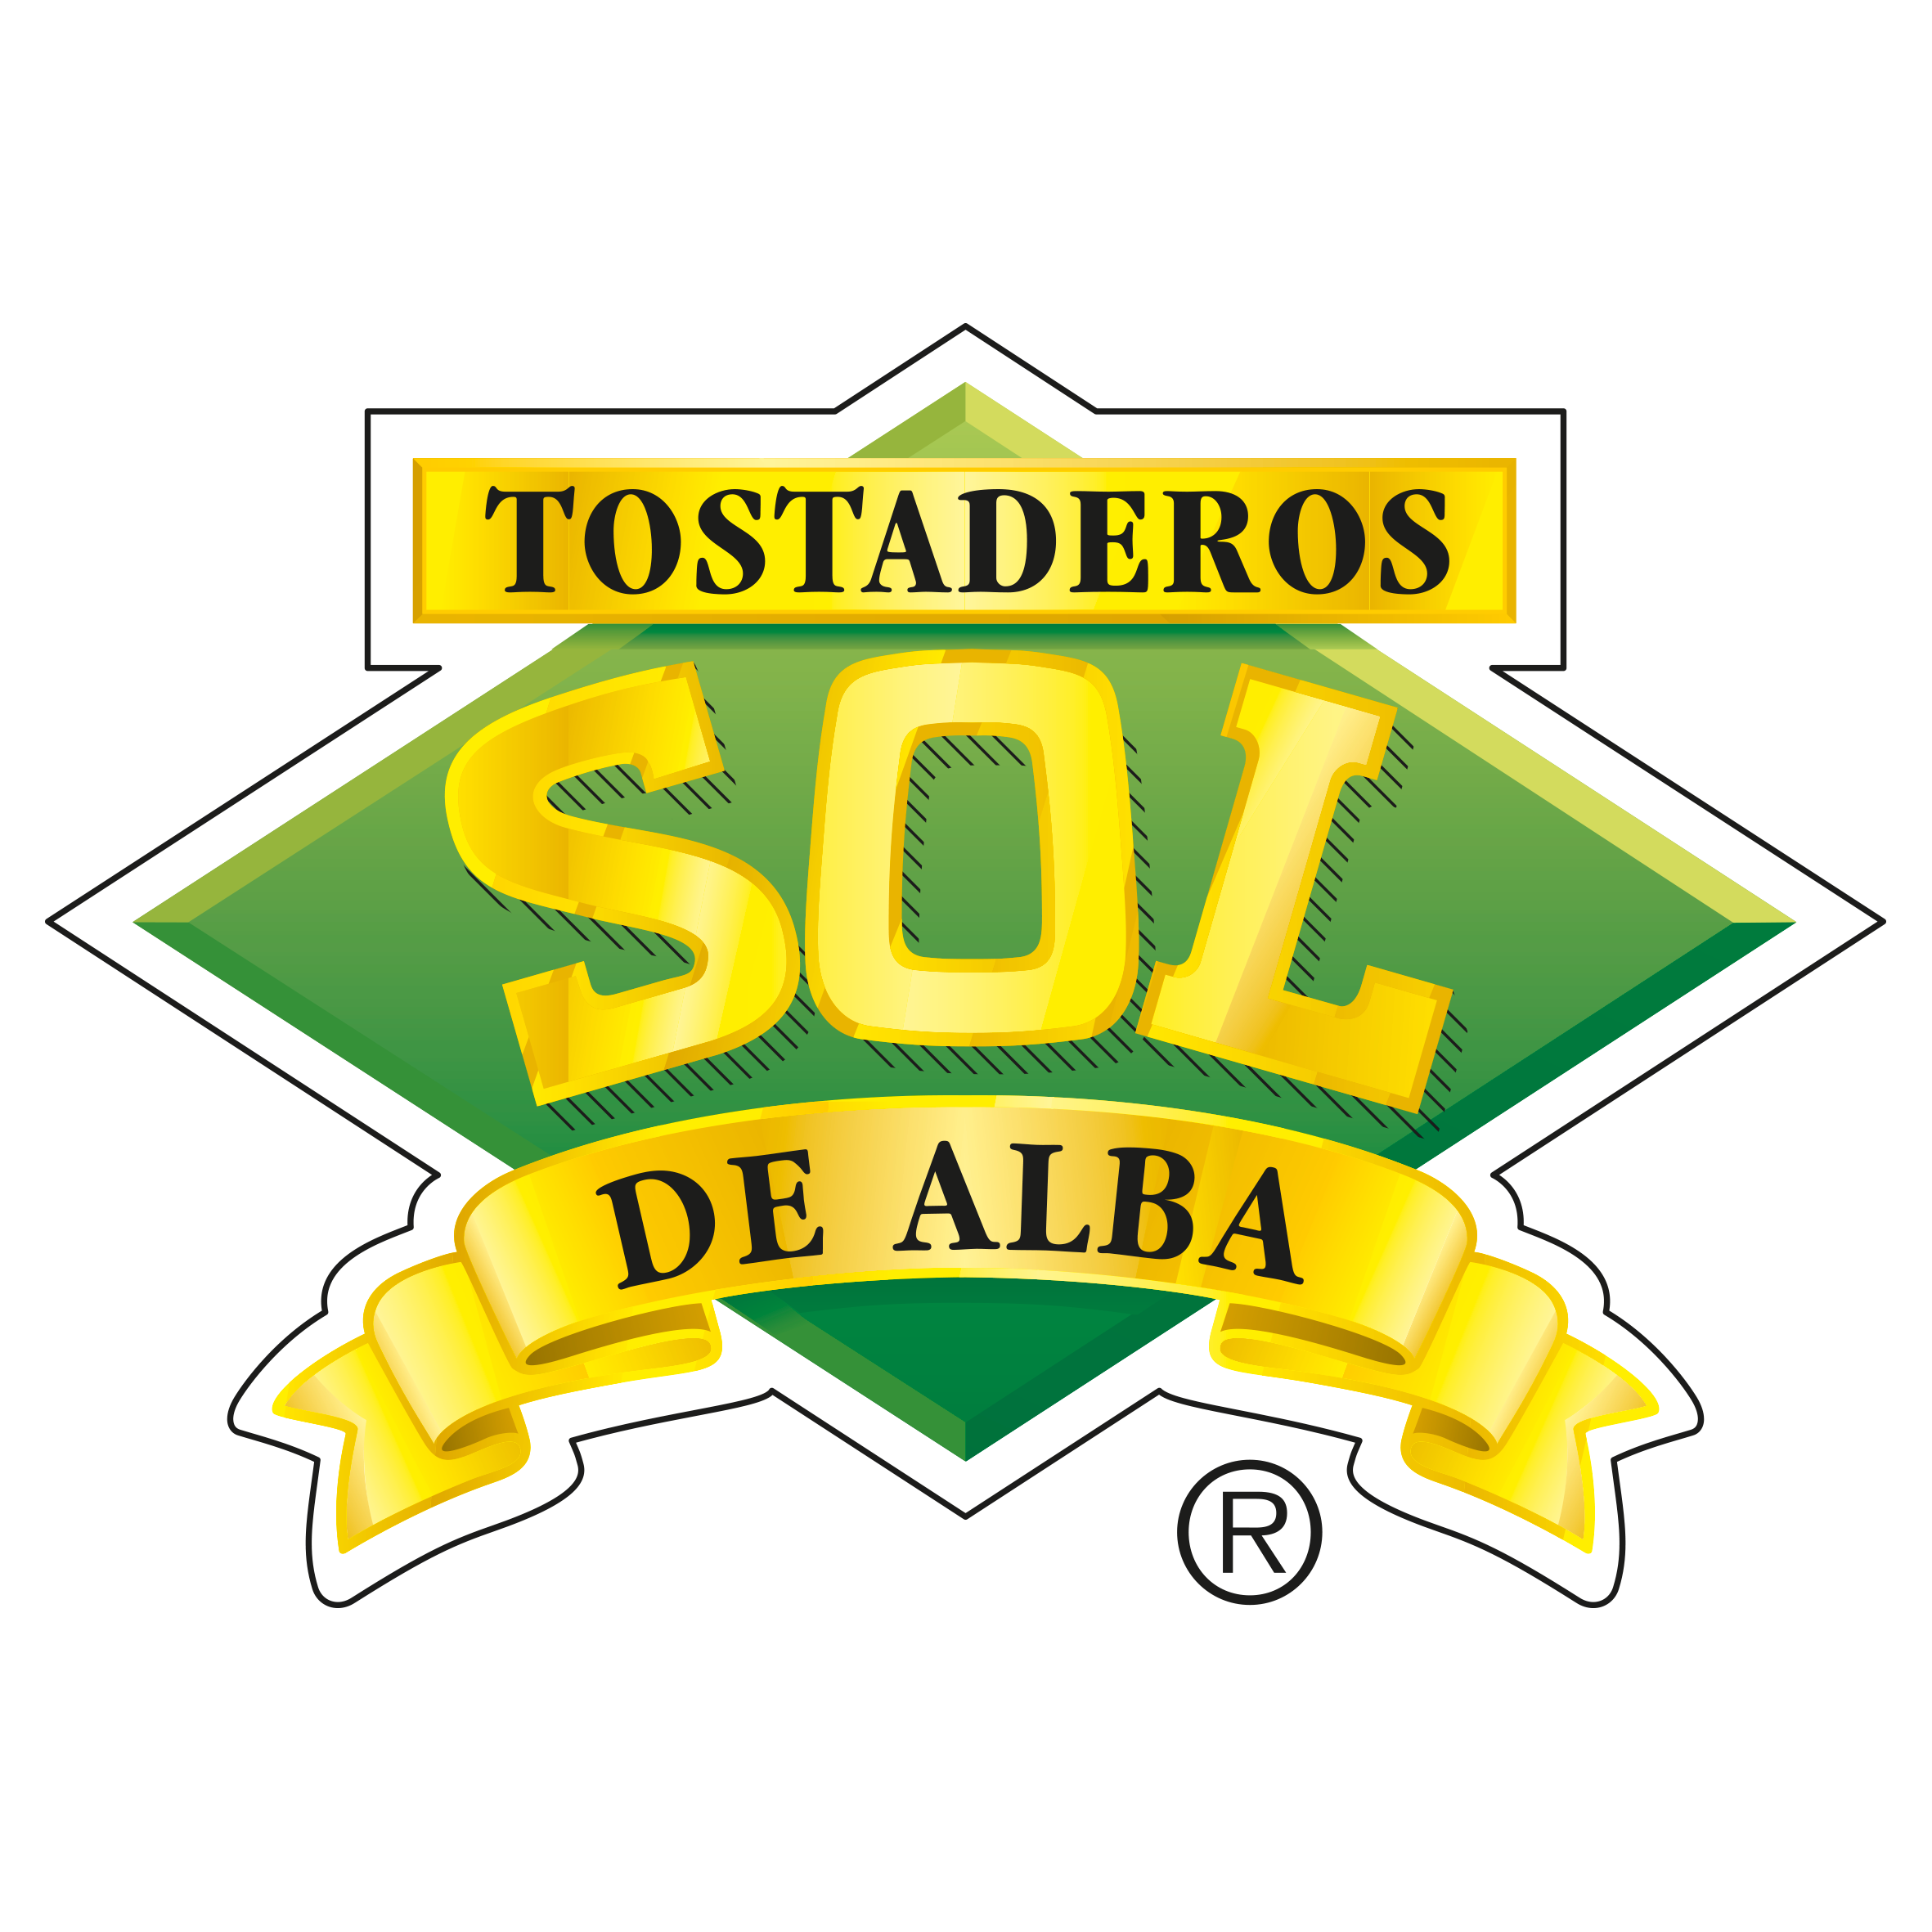 TOSTADEROS SOL DE ALBA, S.L.